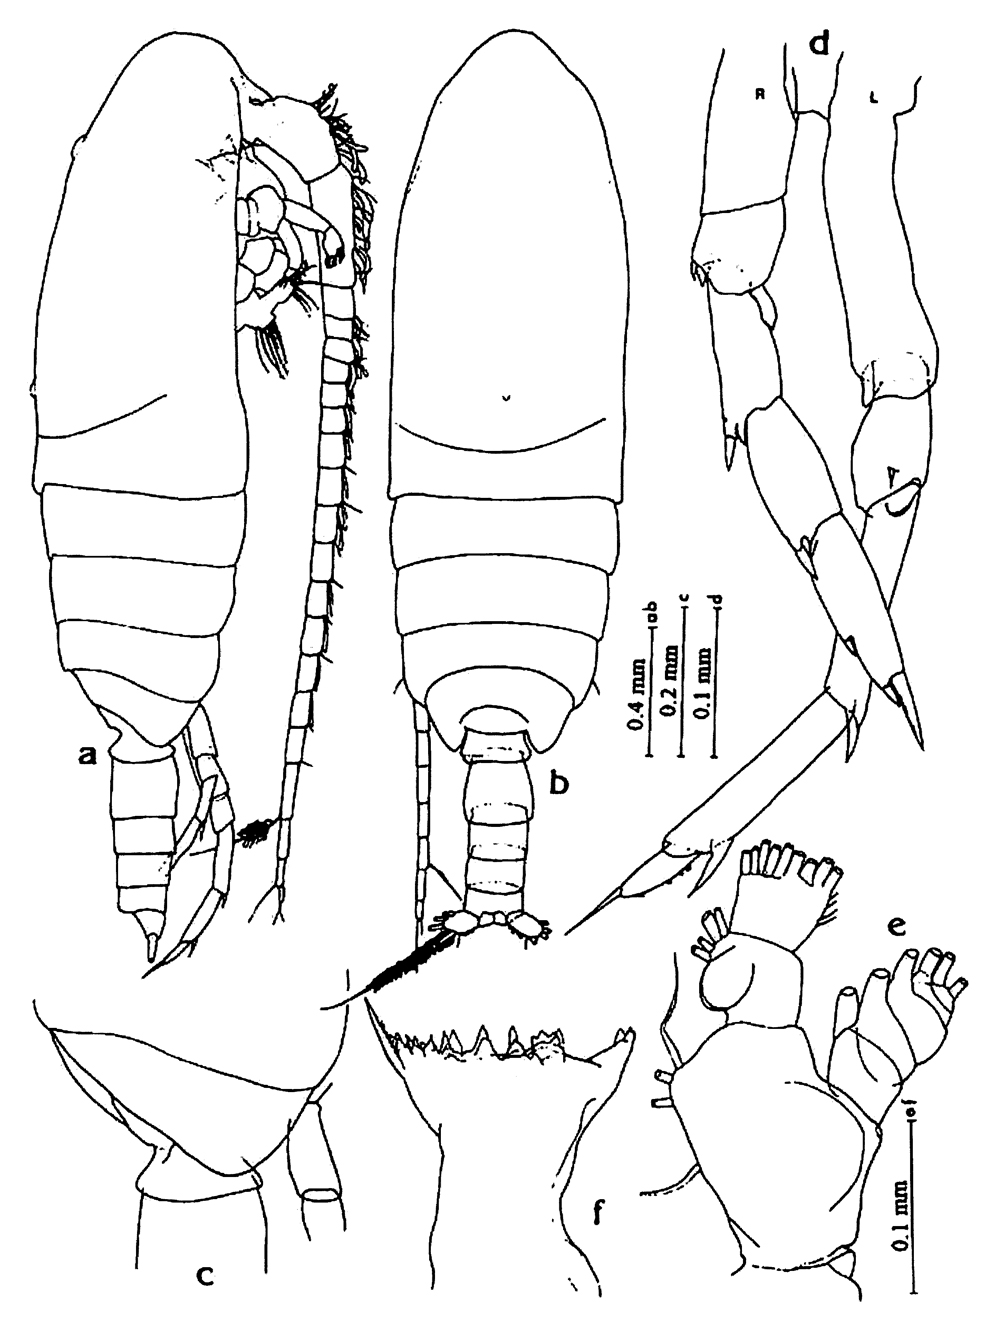 Espèce Calanoides philippinensis - Planche 9 de figures morphologiques